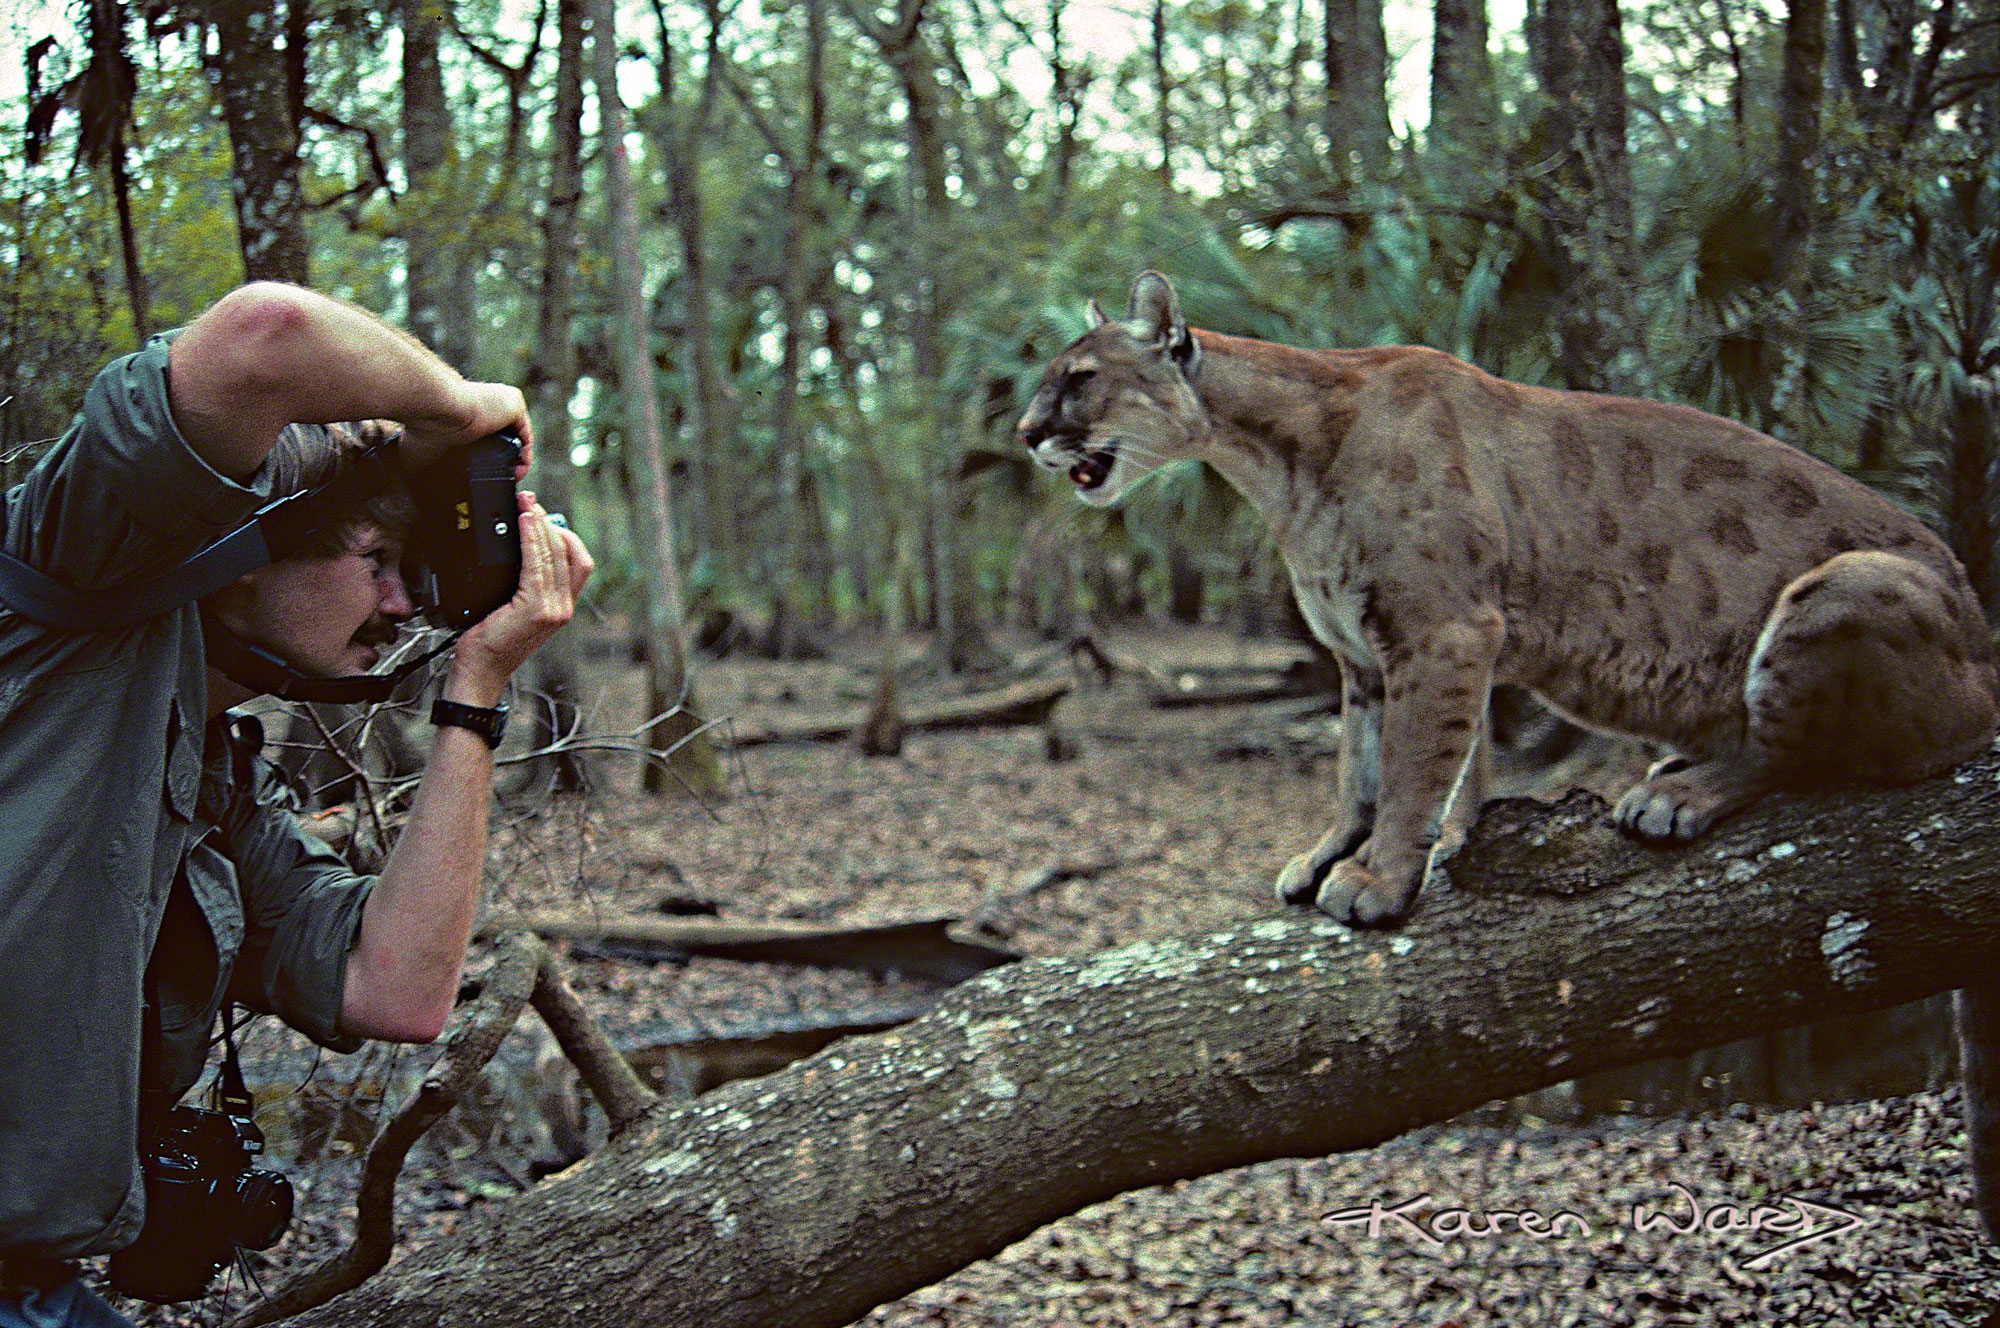 Florida Panther (Puma concolor coryi)